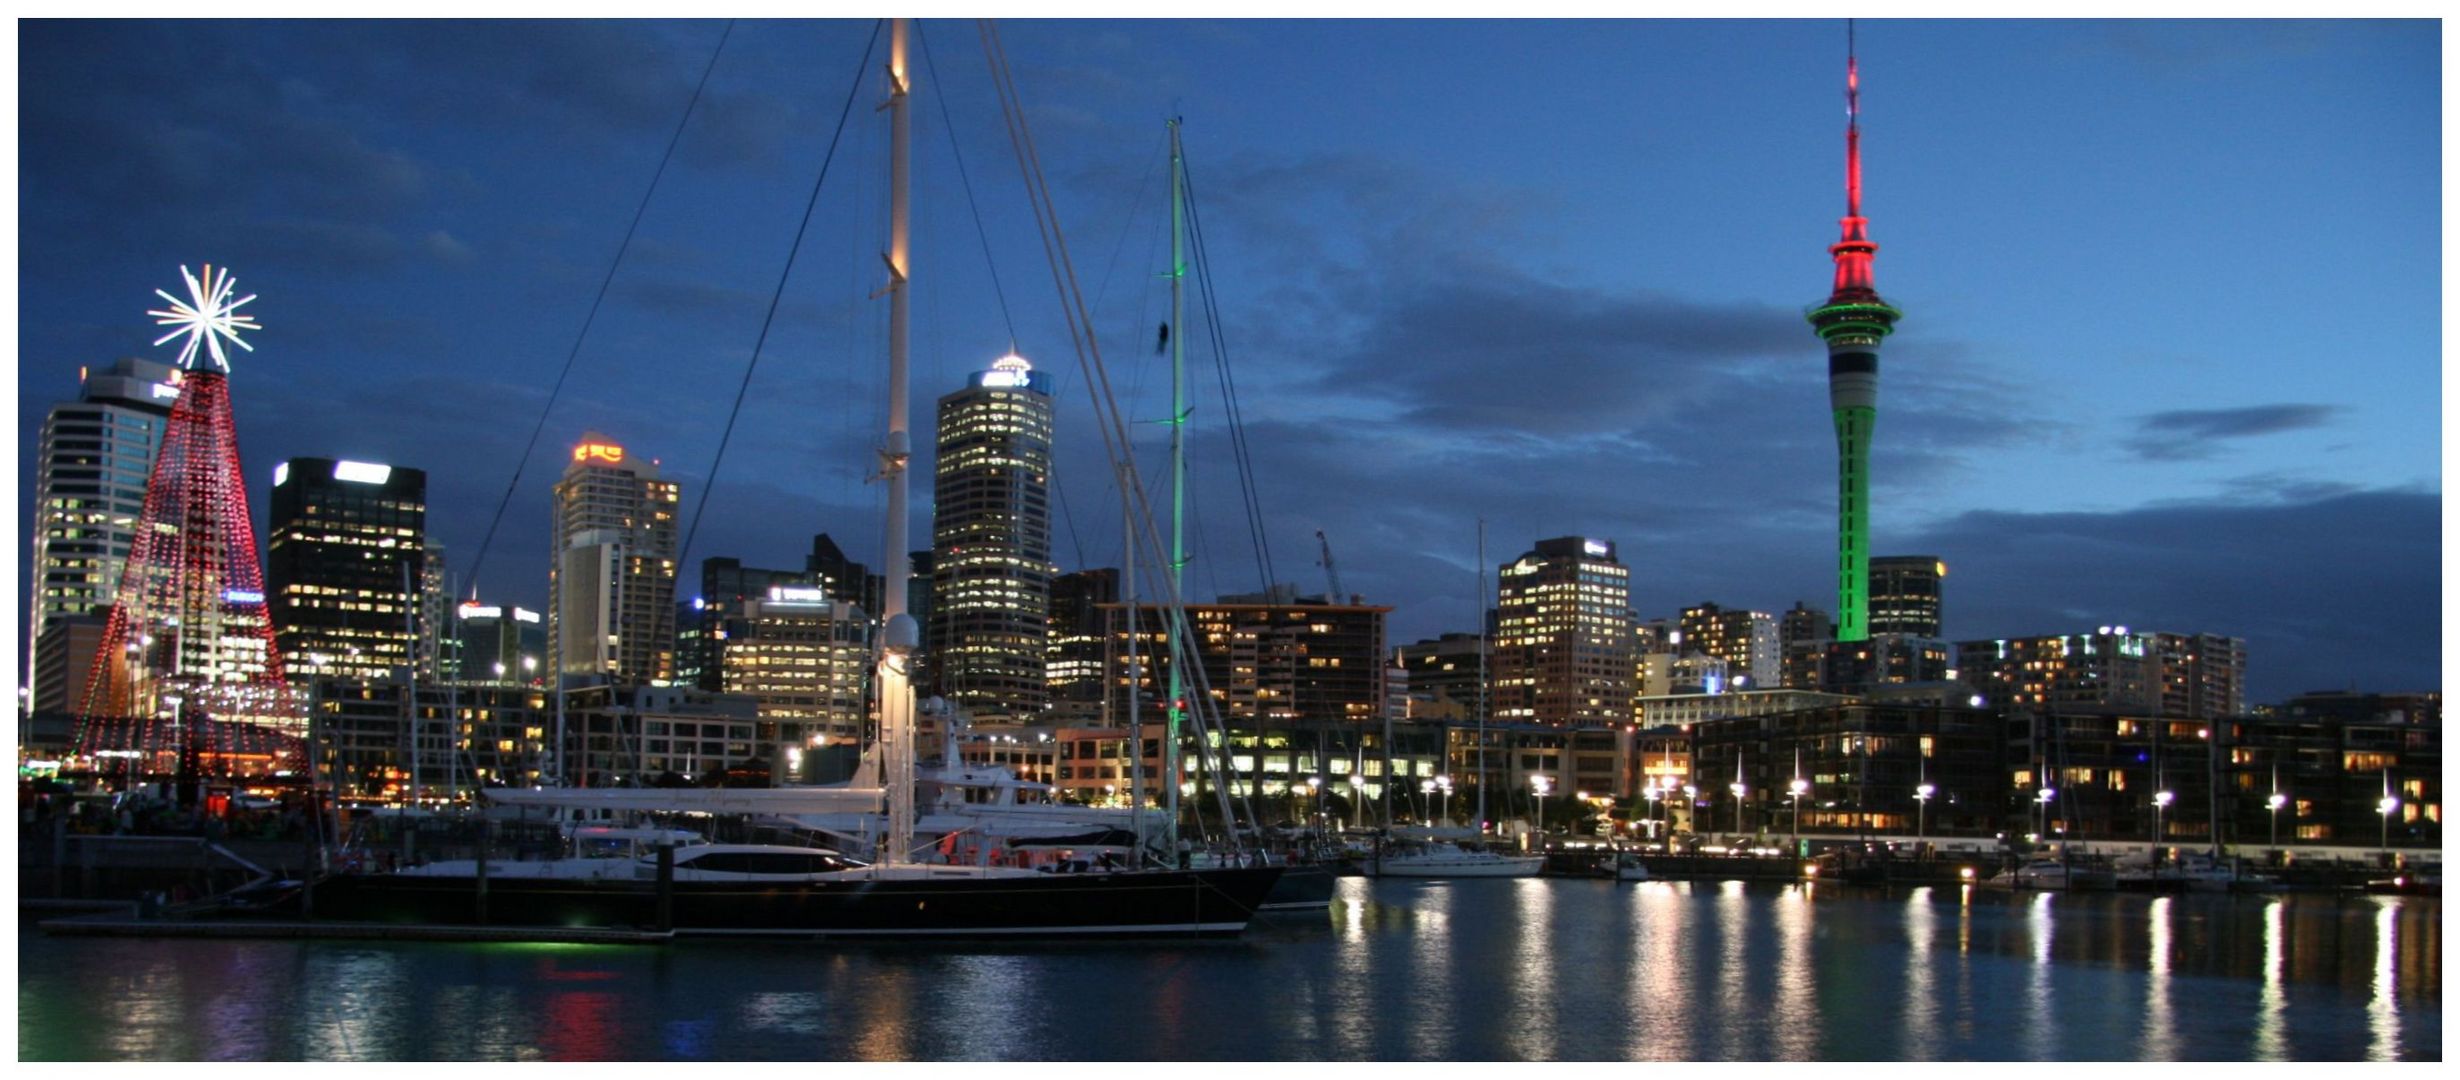 Auckland Harbor